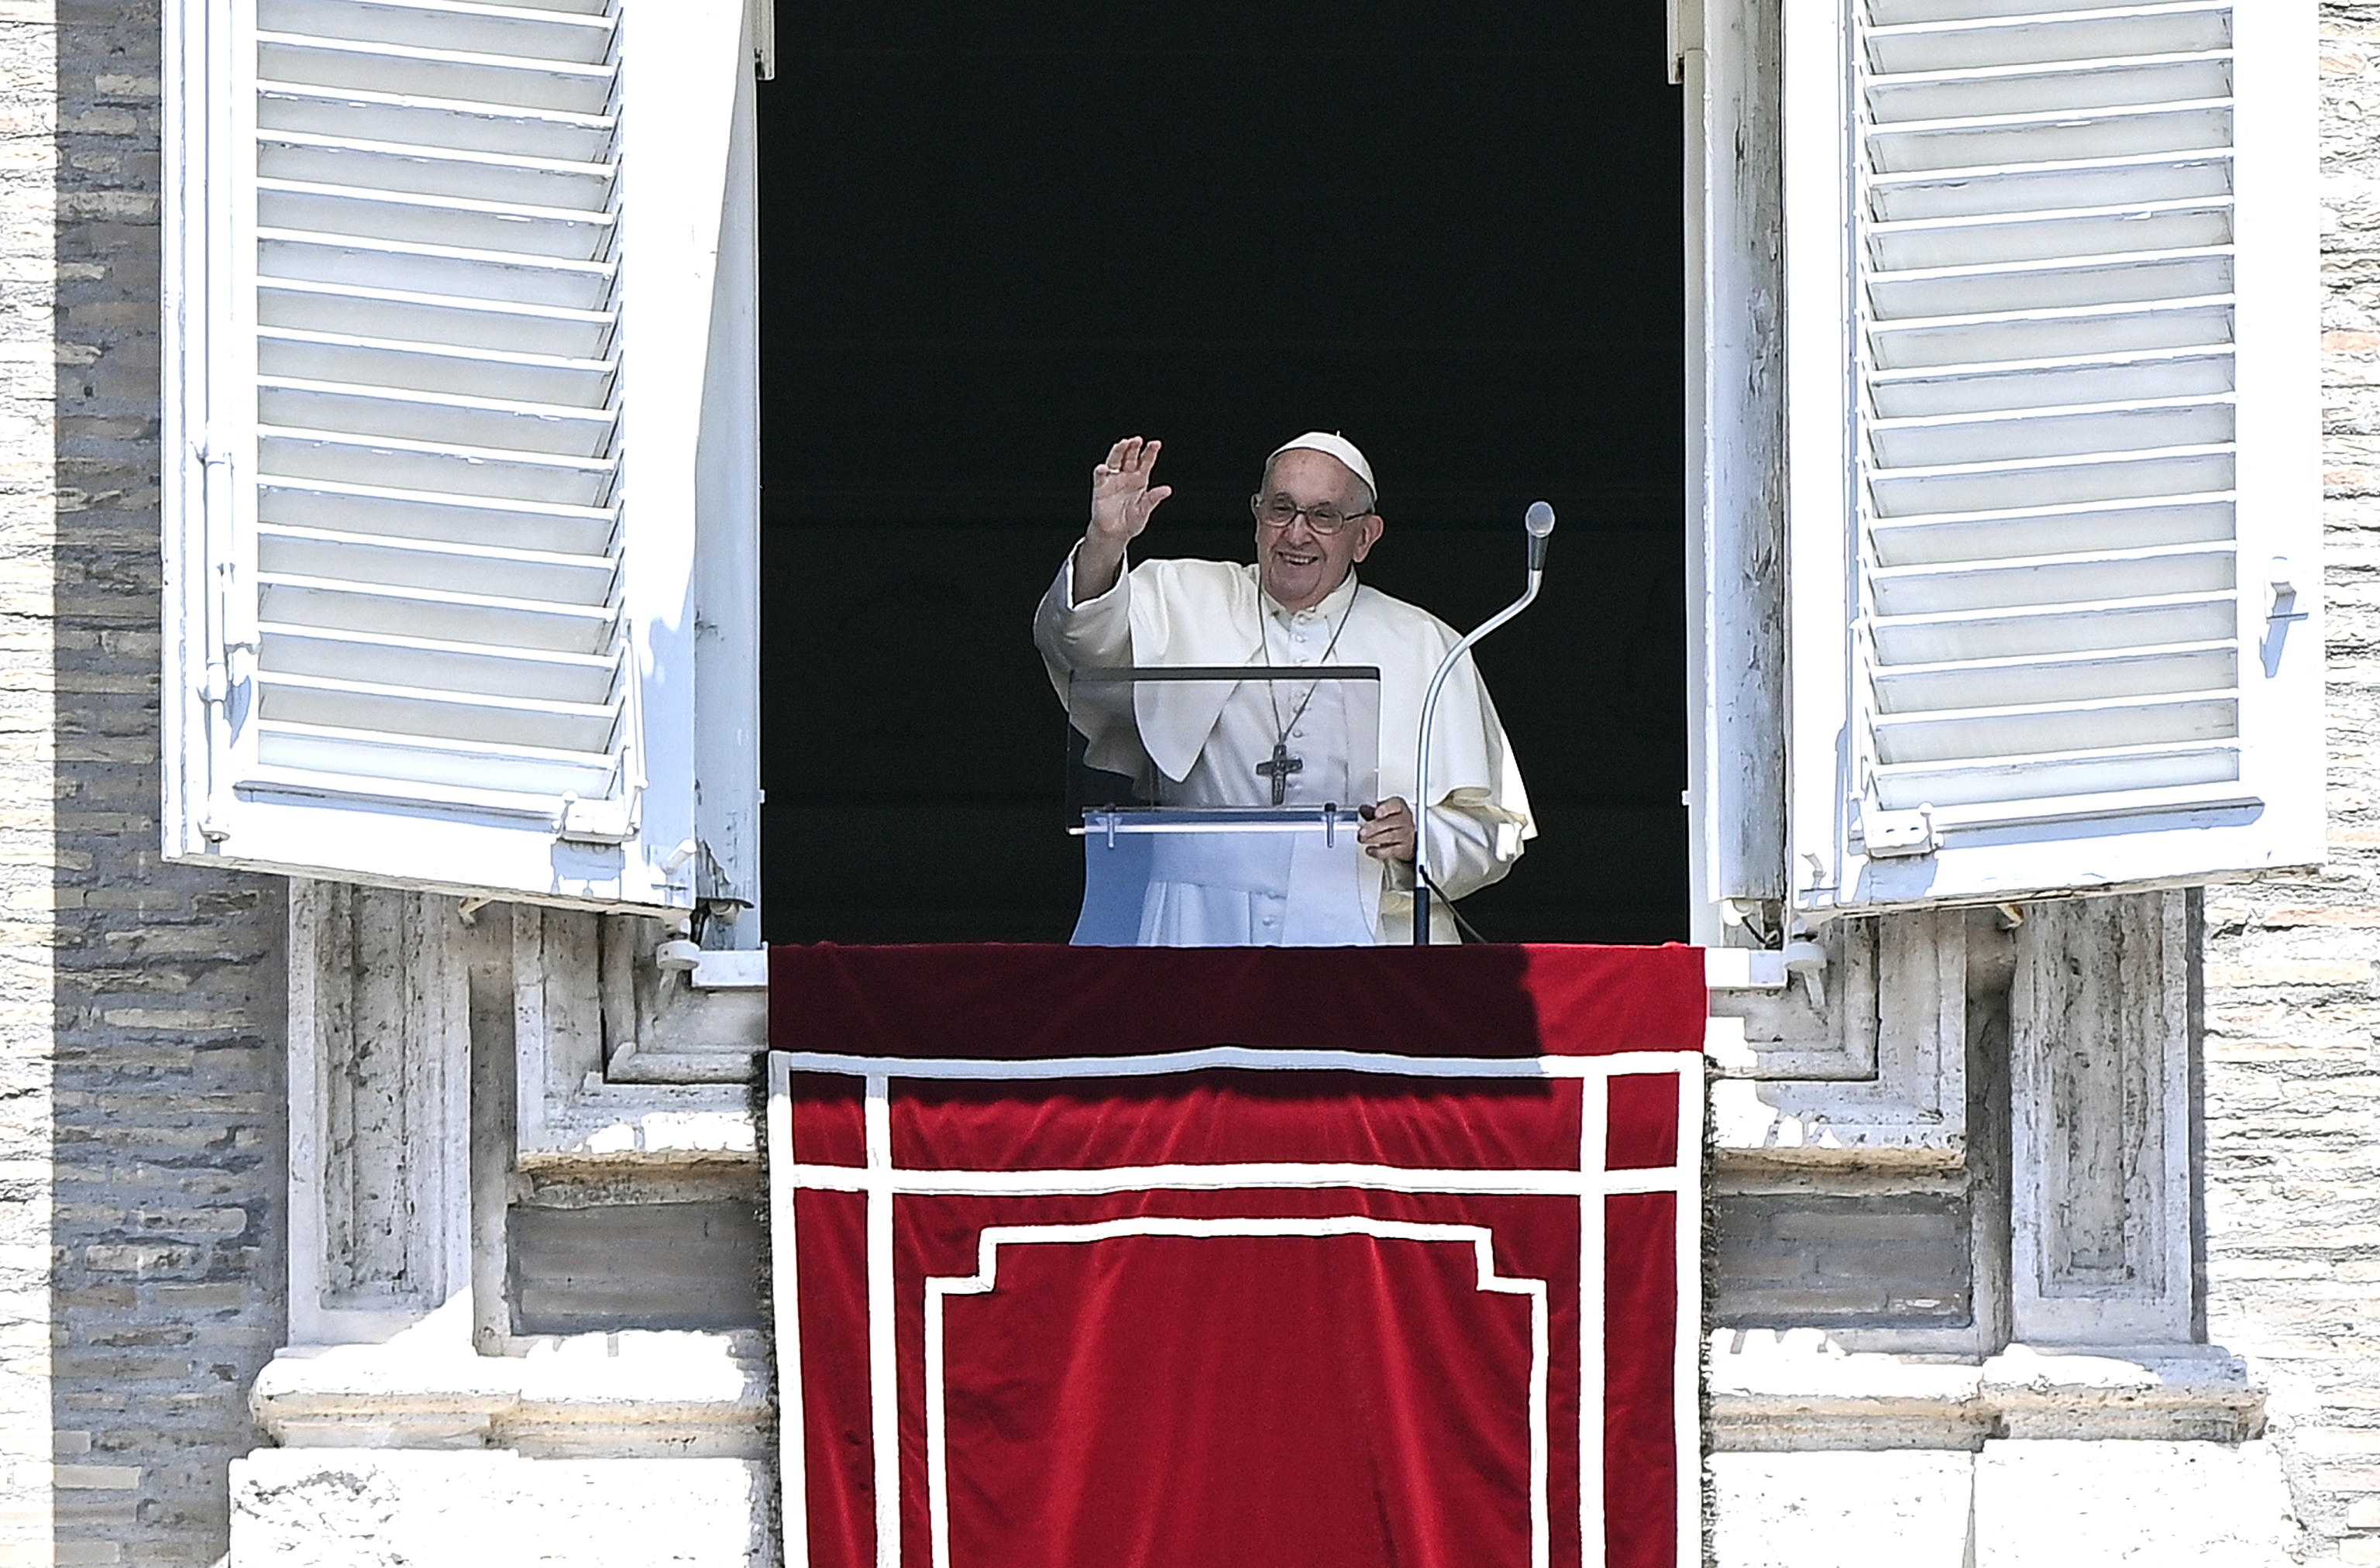 El Papa muestra su apoyo a la familia de Manuela Orlandi 40 años después de su desaparición